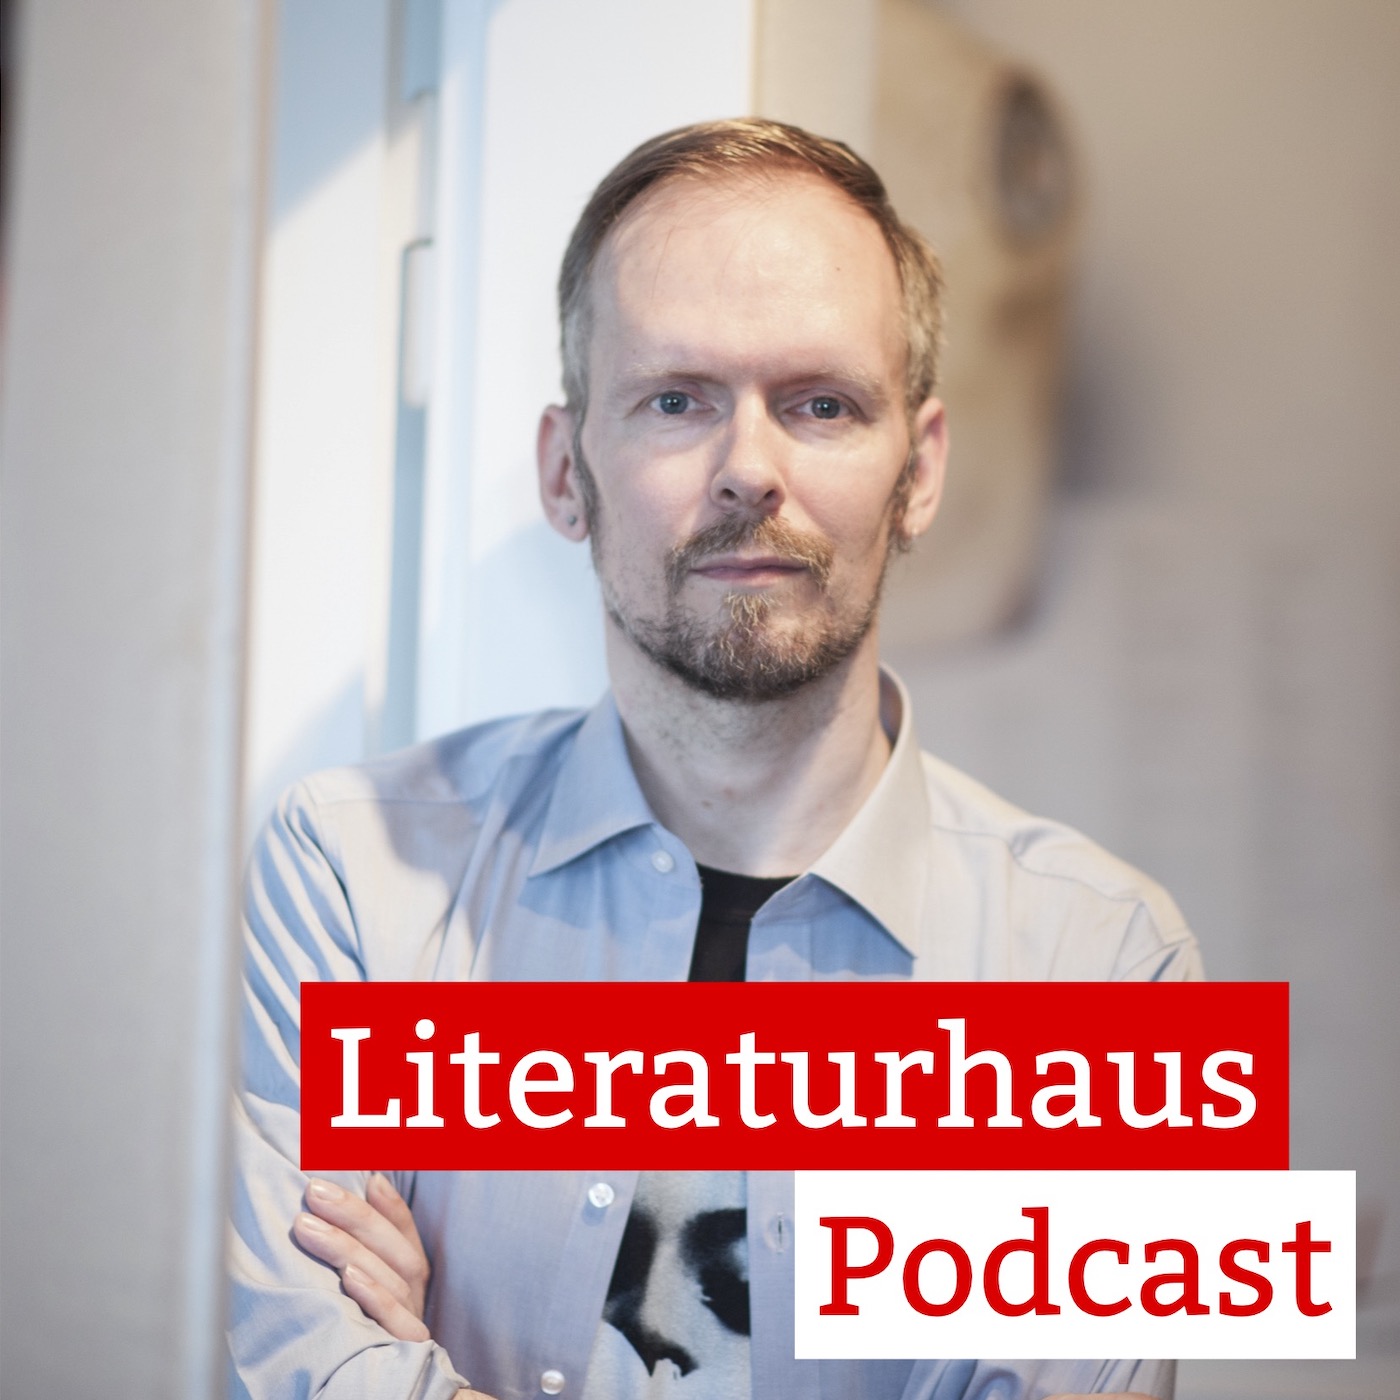 Foto des Autors Dietmar Dath mit dem Schriftzug des Litertaurhaus-Podcasts